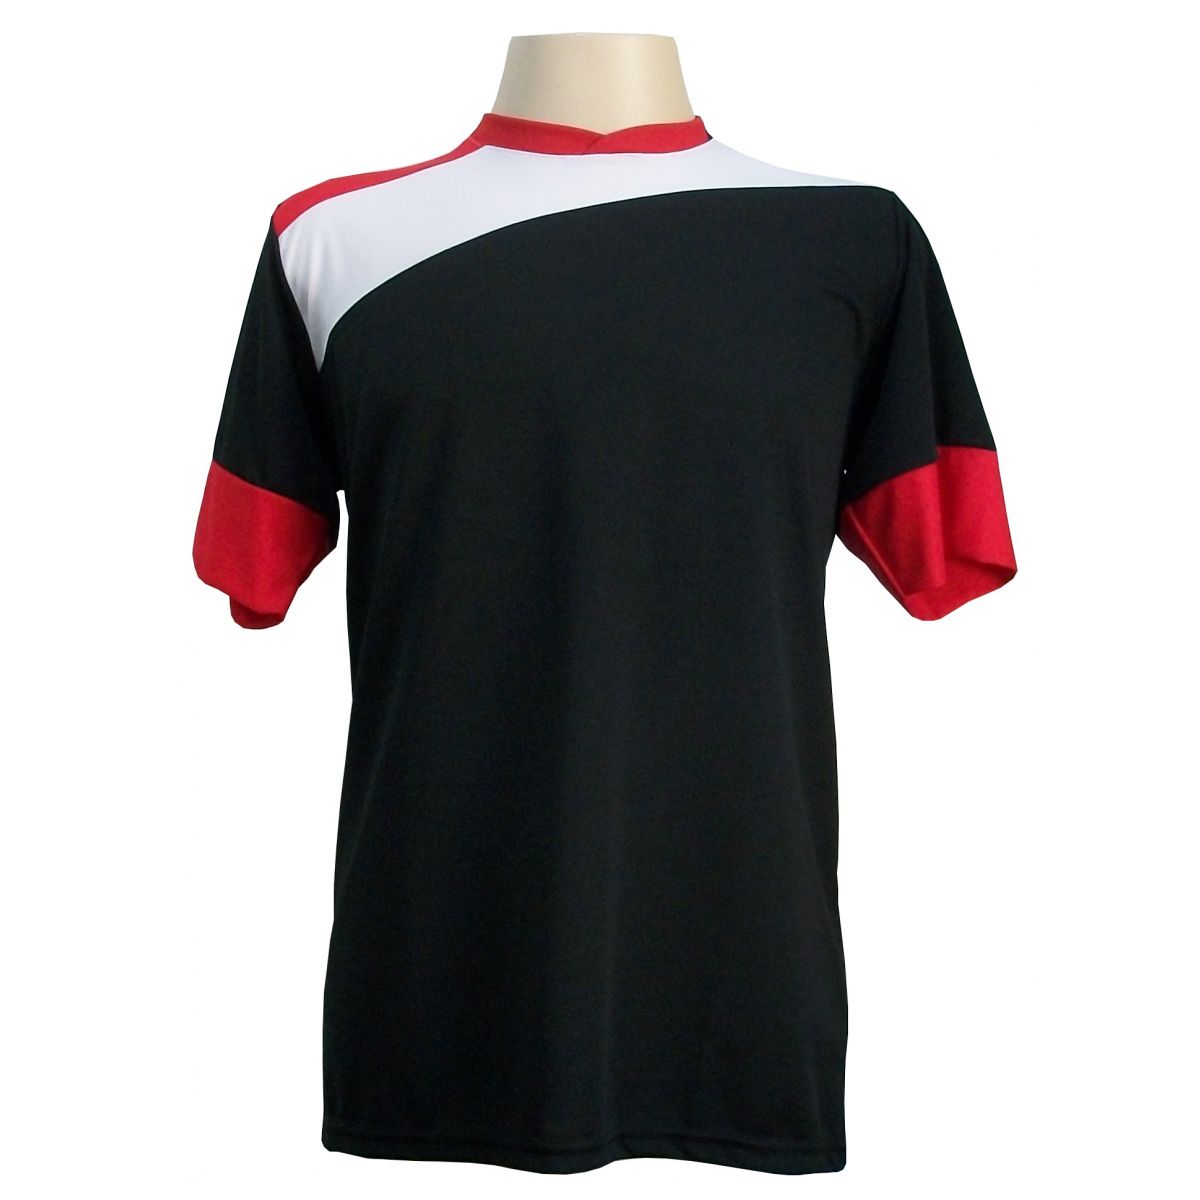 Uniforme Esportivo com 14 camisas modelo Sporting Preto/Branco/Vermelho + 14 calções modelo Madrid Vermelho + Brindes